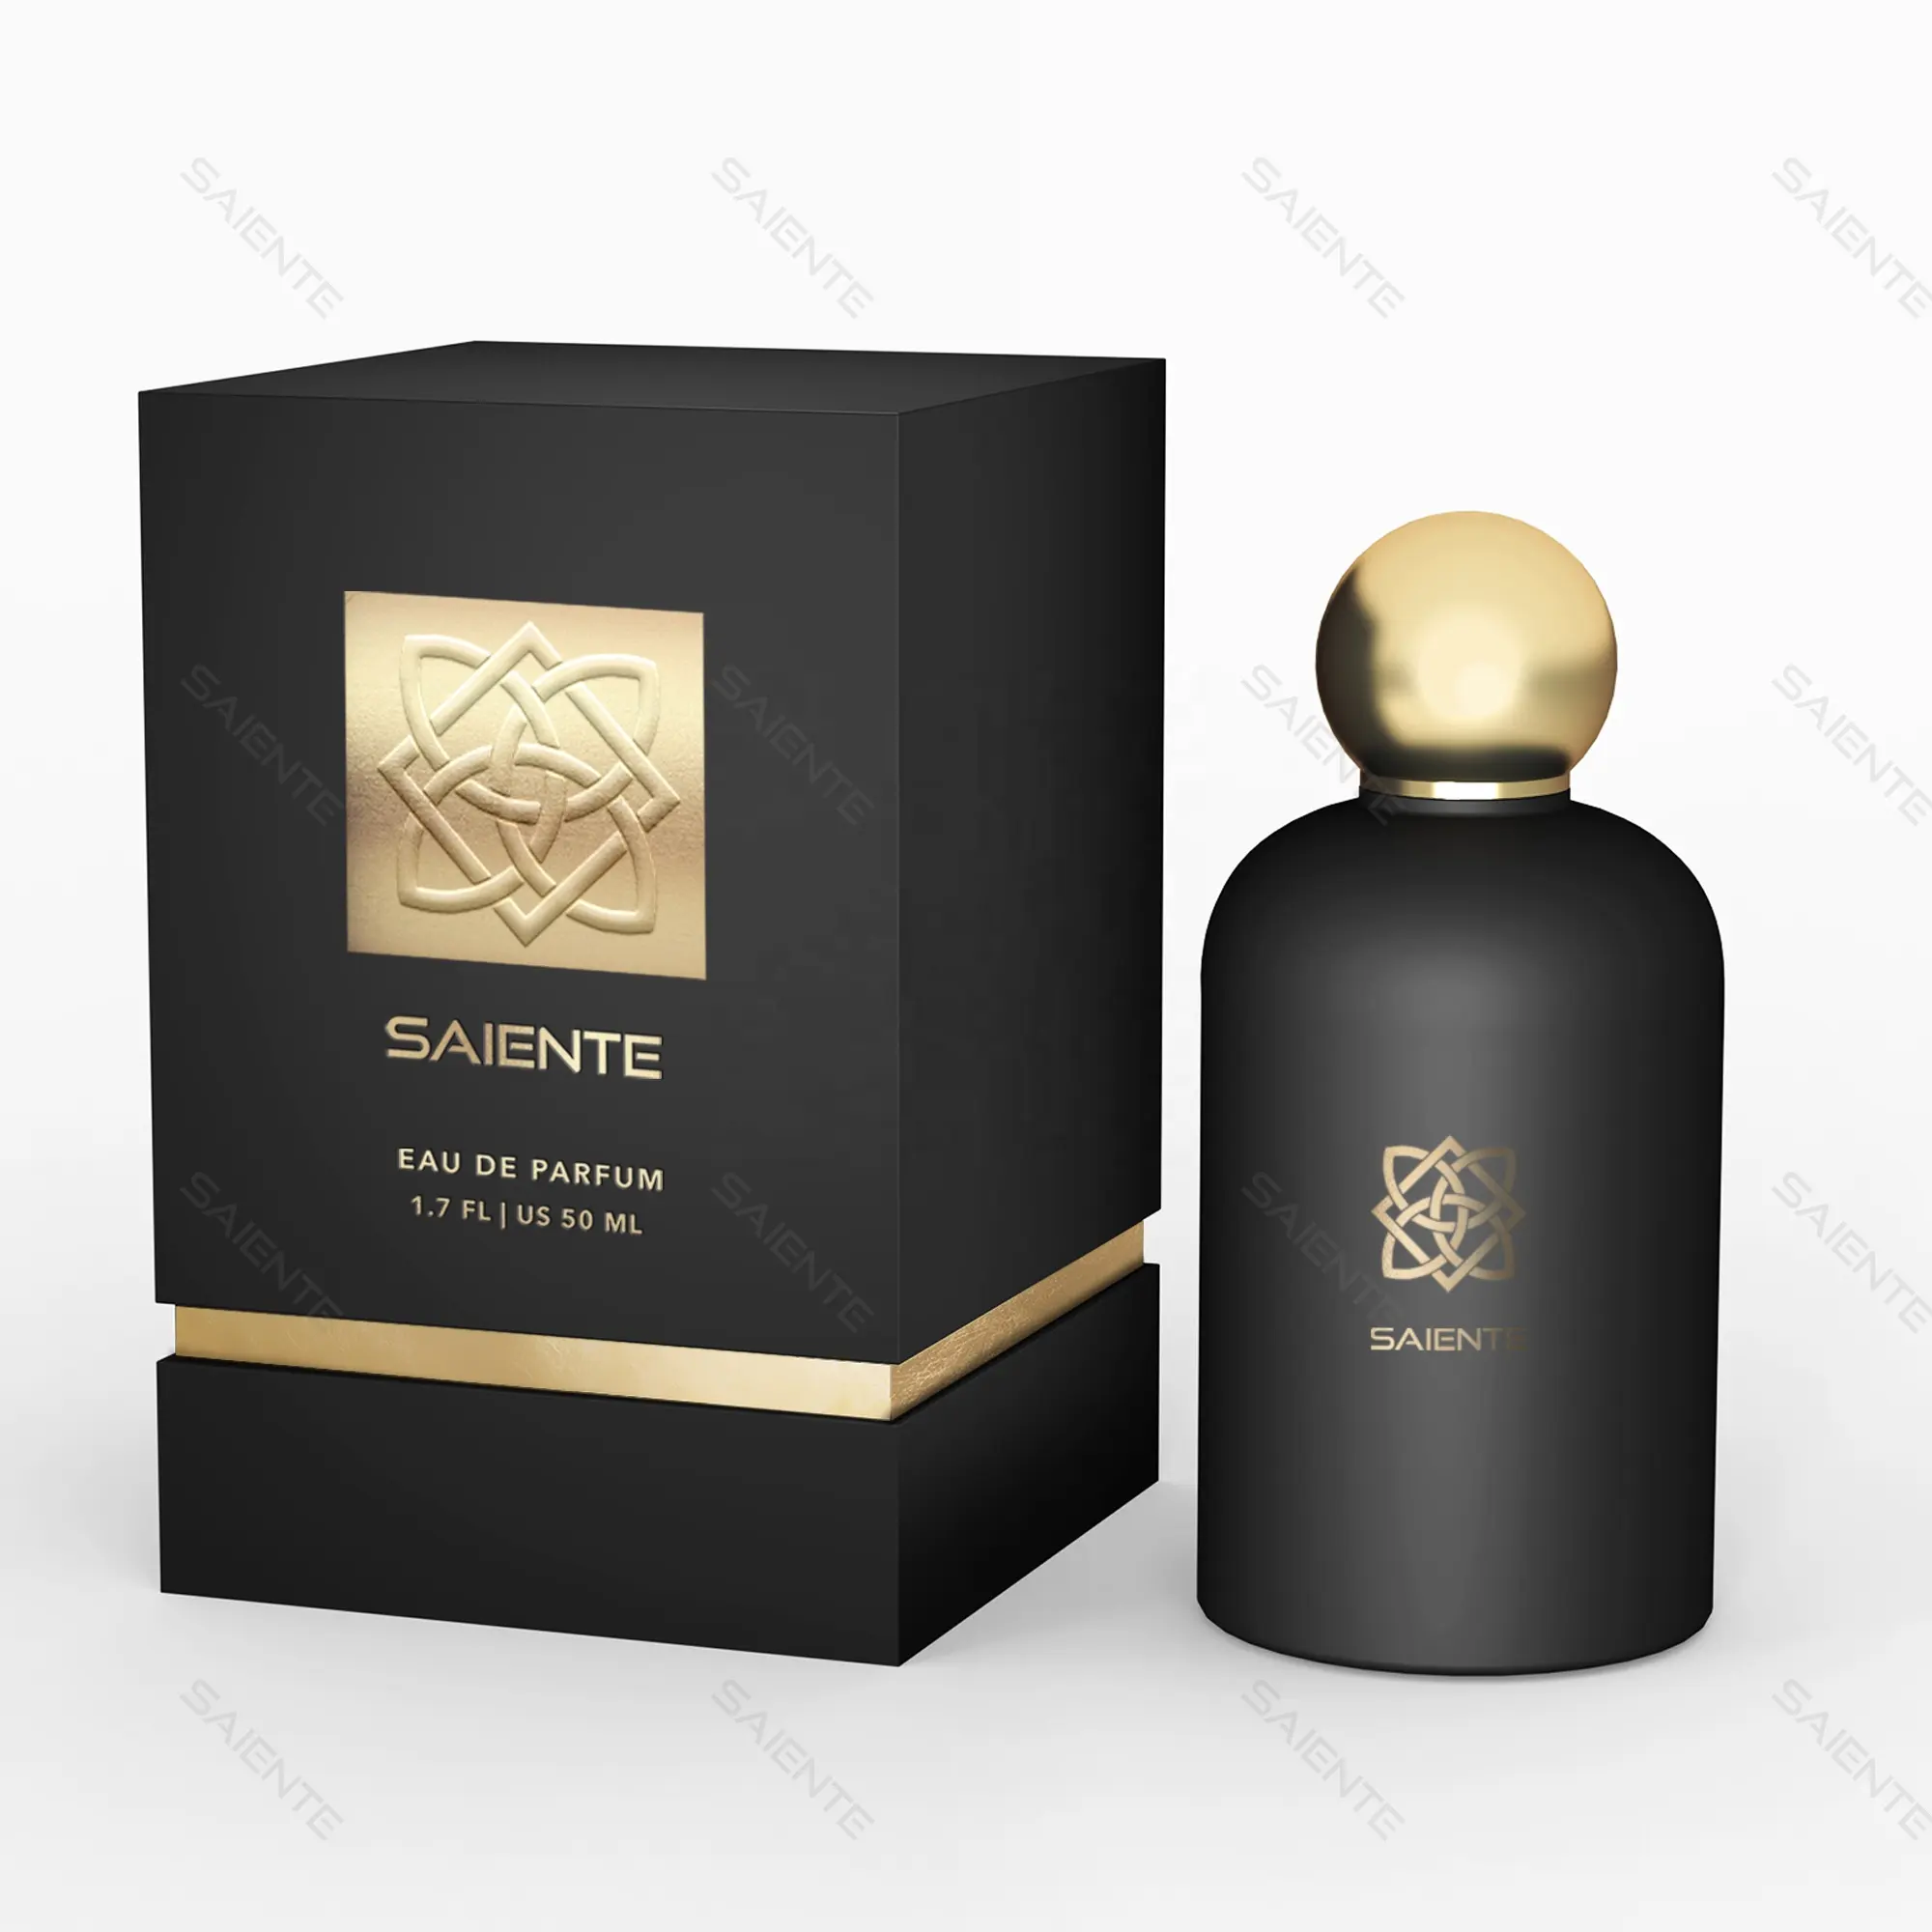 Neues Design Hochwertige schwarze arabische Glasflasche Kosmetik verpackung Leere Sprüh flasche 30ml Glas parfüm flaschen mit Box